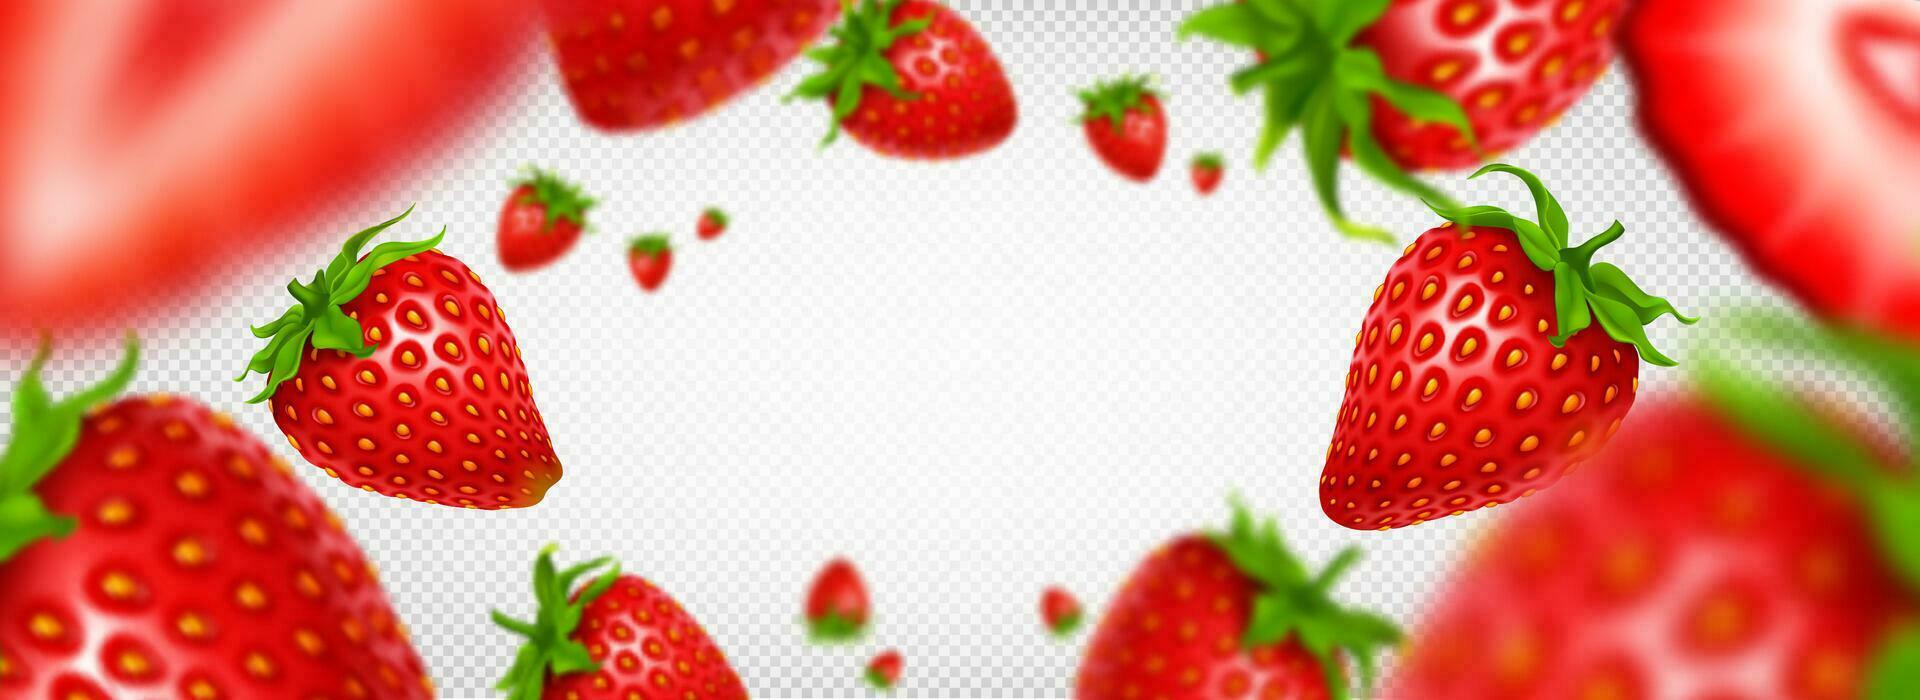 3d isoliert realistisch Erdbeere Obst Scheibe Rahmen vektor